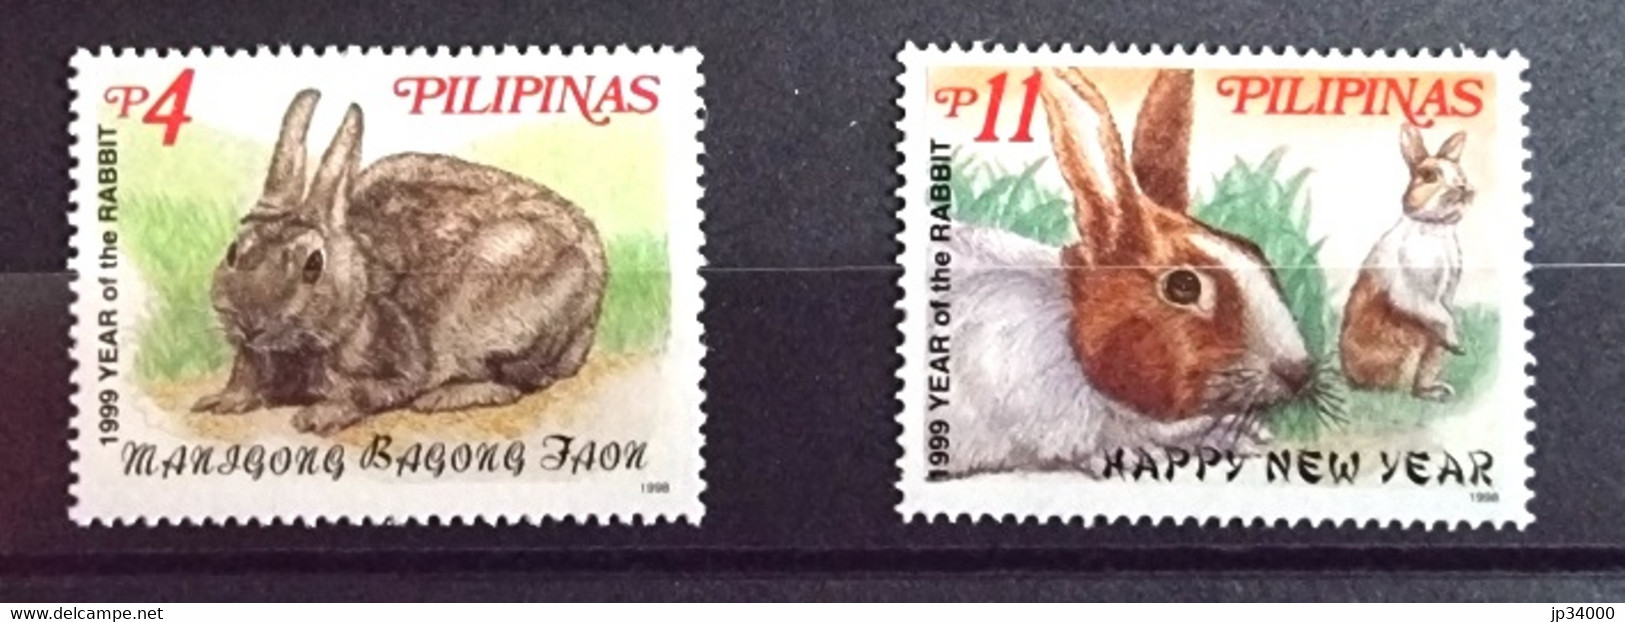 PHILIPPINES-PILIPINAS Lapins, Lapin, Rabbit, Conejo. Année Du Lapin 1999 2 Valeurs Dentelé. ** Neuf Sans Charnière - Hasen